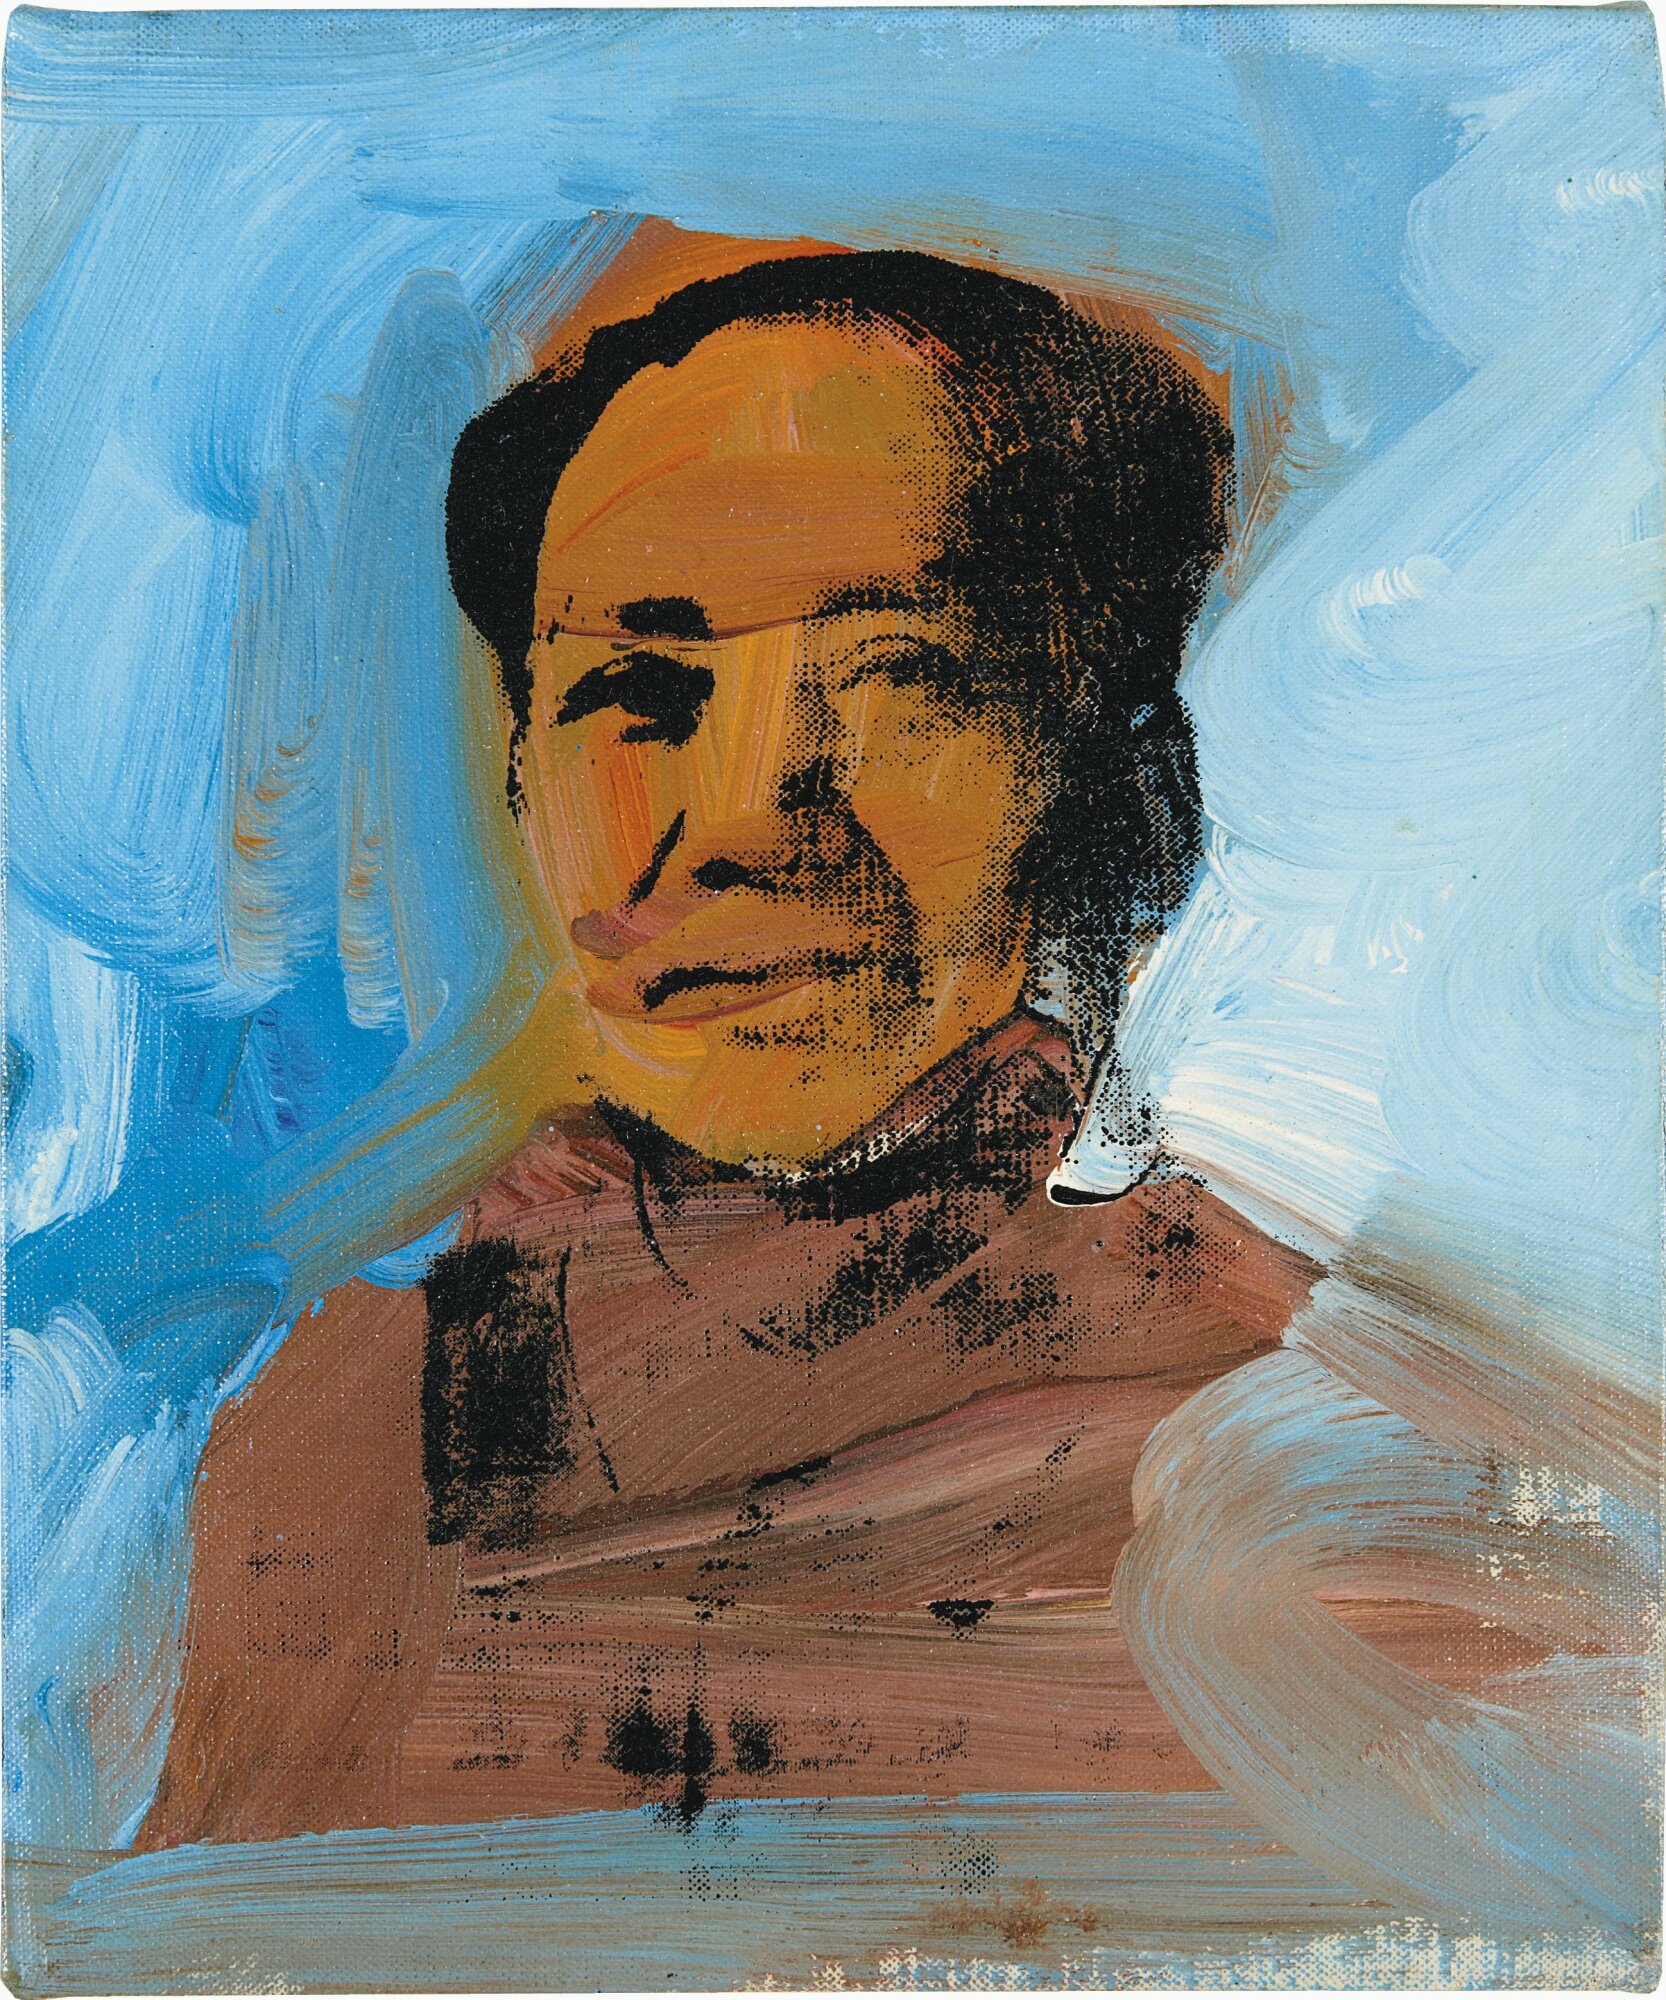 Andy Warhol (1928 - 1987), Mao, 1974 - Alain.R.Truong